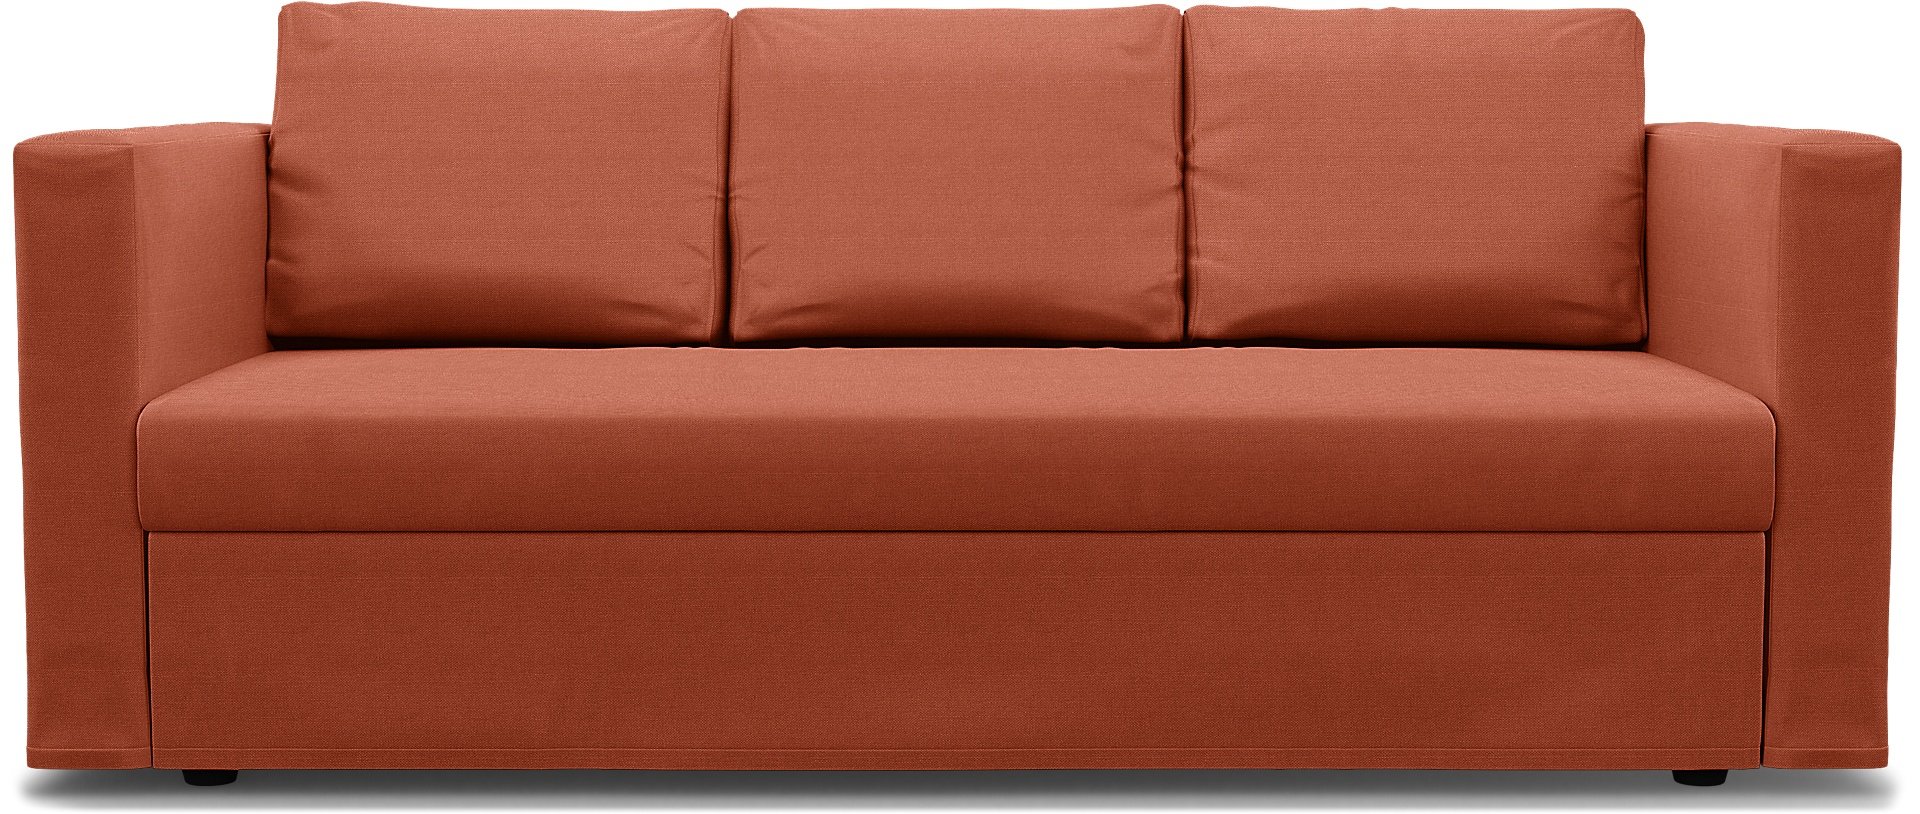 IKEA - Friheten 3 Seater Sofa Bed Cover, Burnt Orange, Linen - Bemz